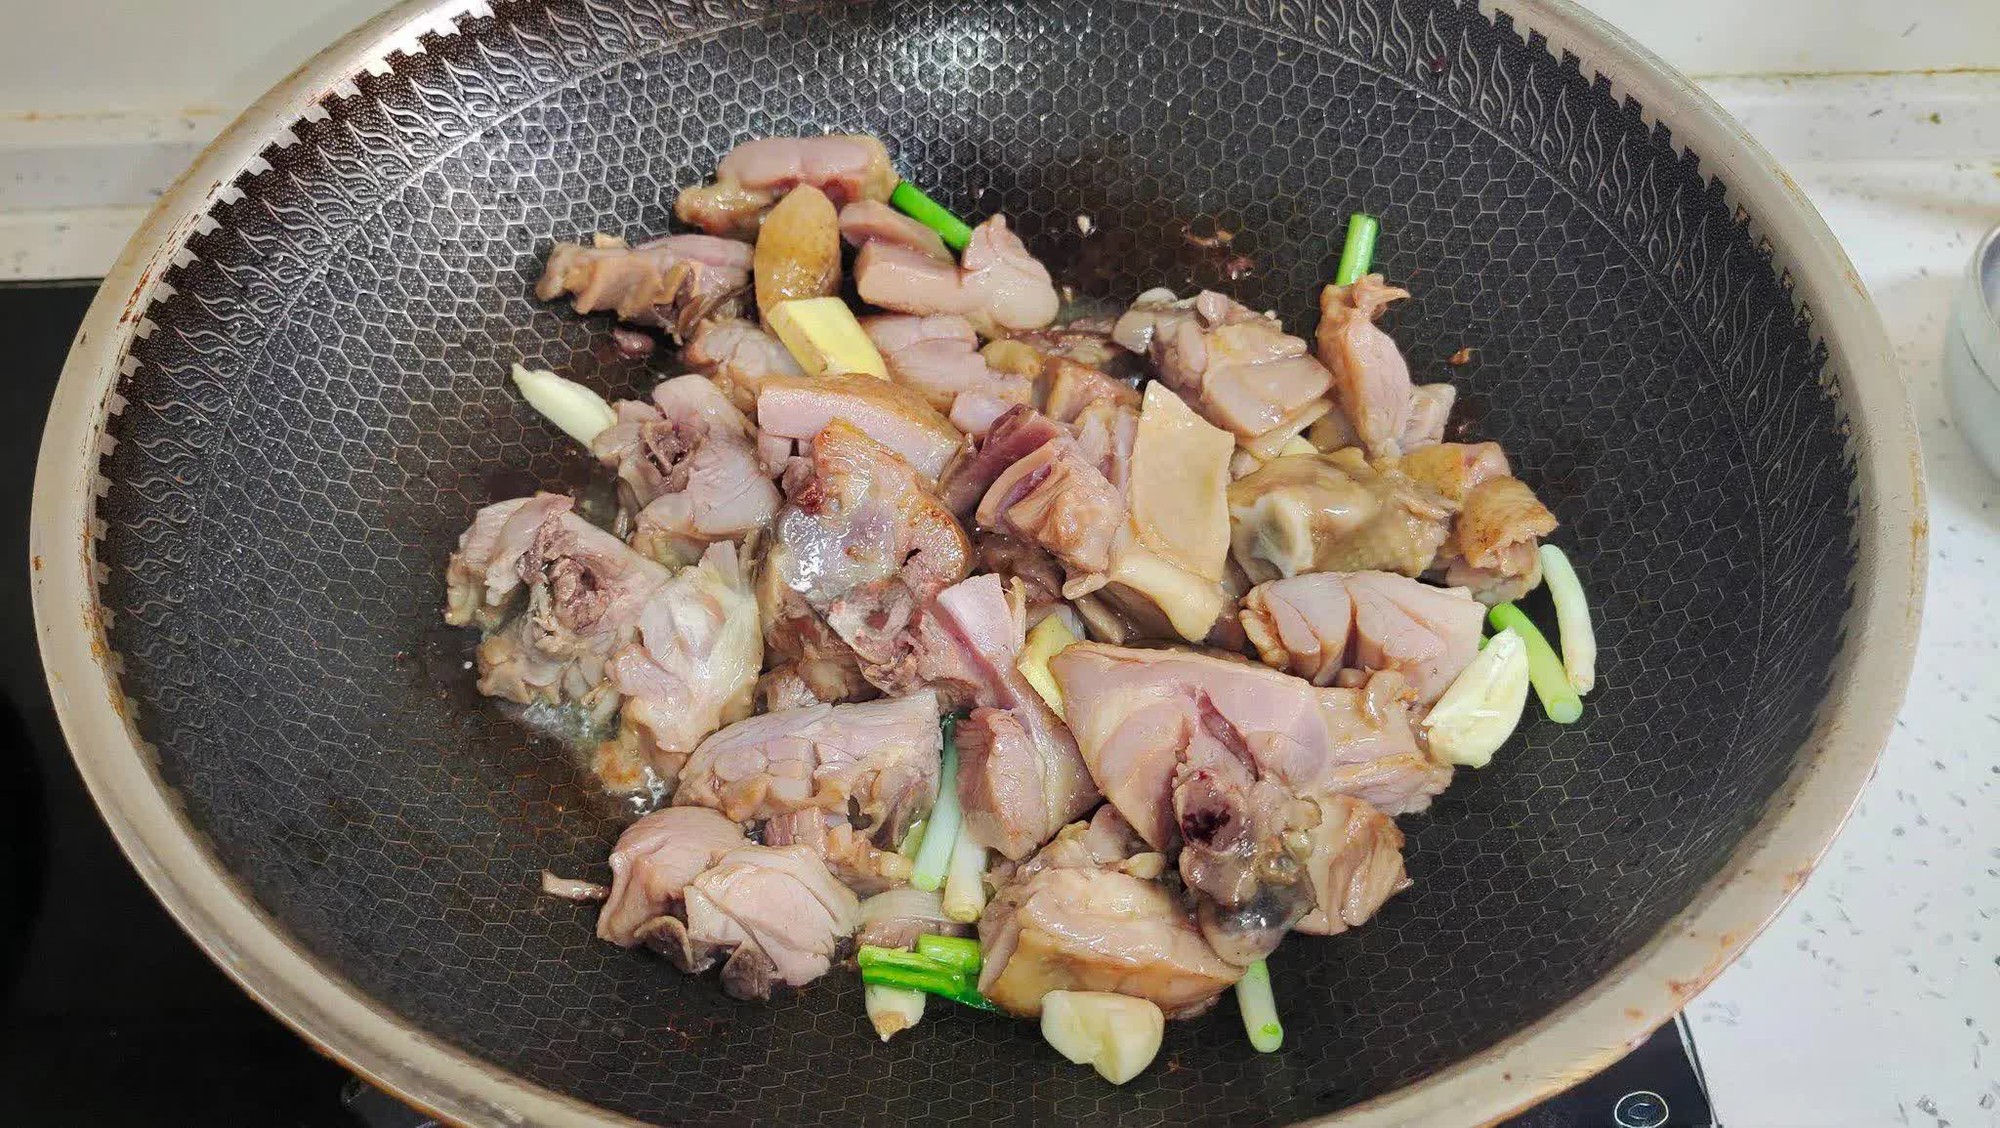  Thịt gà đem nấu cùng loại rau này ăn vừa mềm ngọt, thơm ngon mà lại giúp tăng cường hệ miễn dịch, chống lão hóa...  - Ảnh 4.